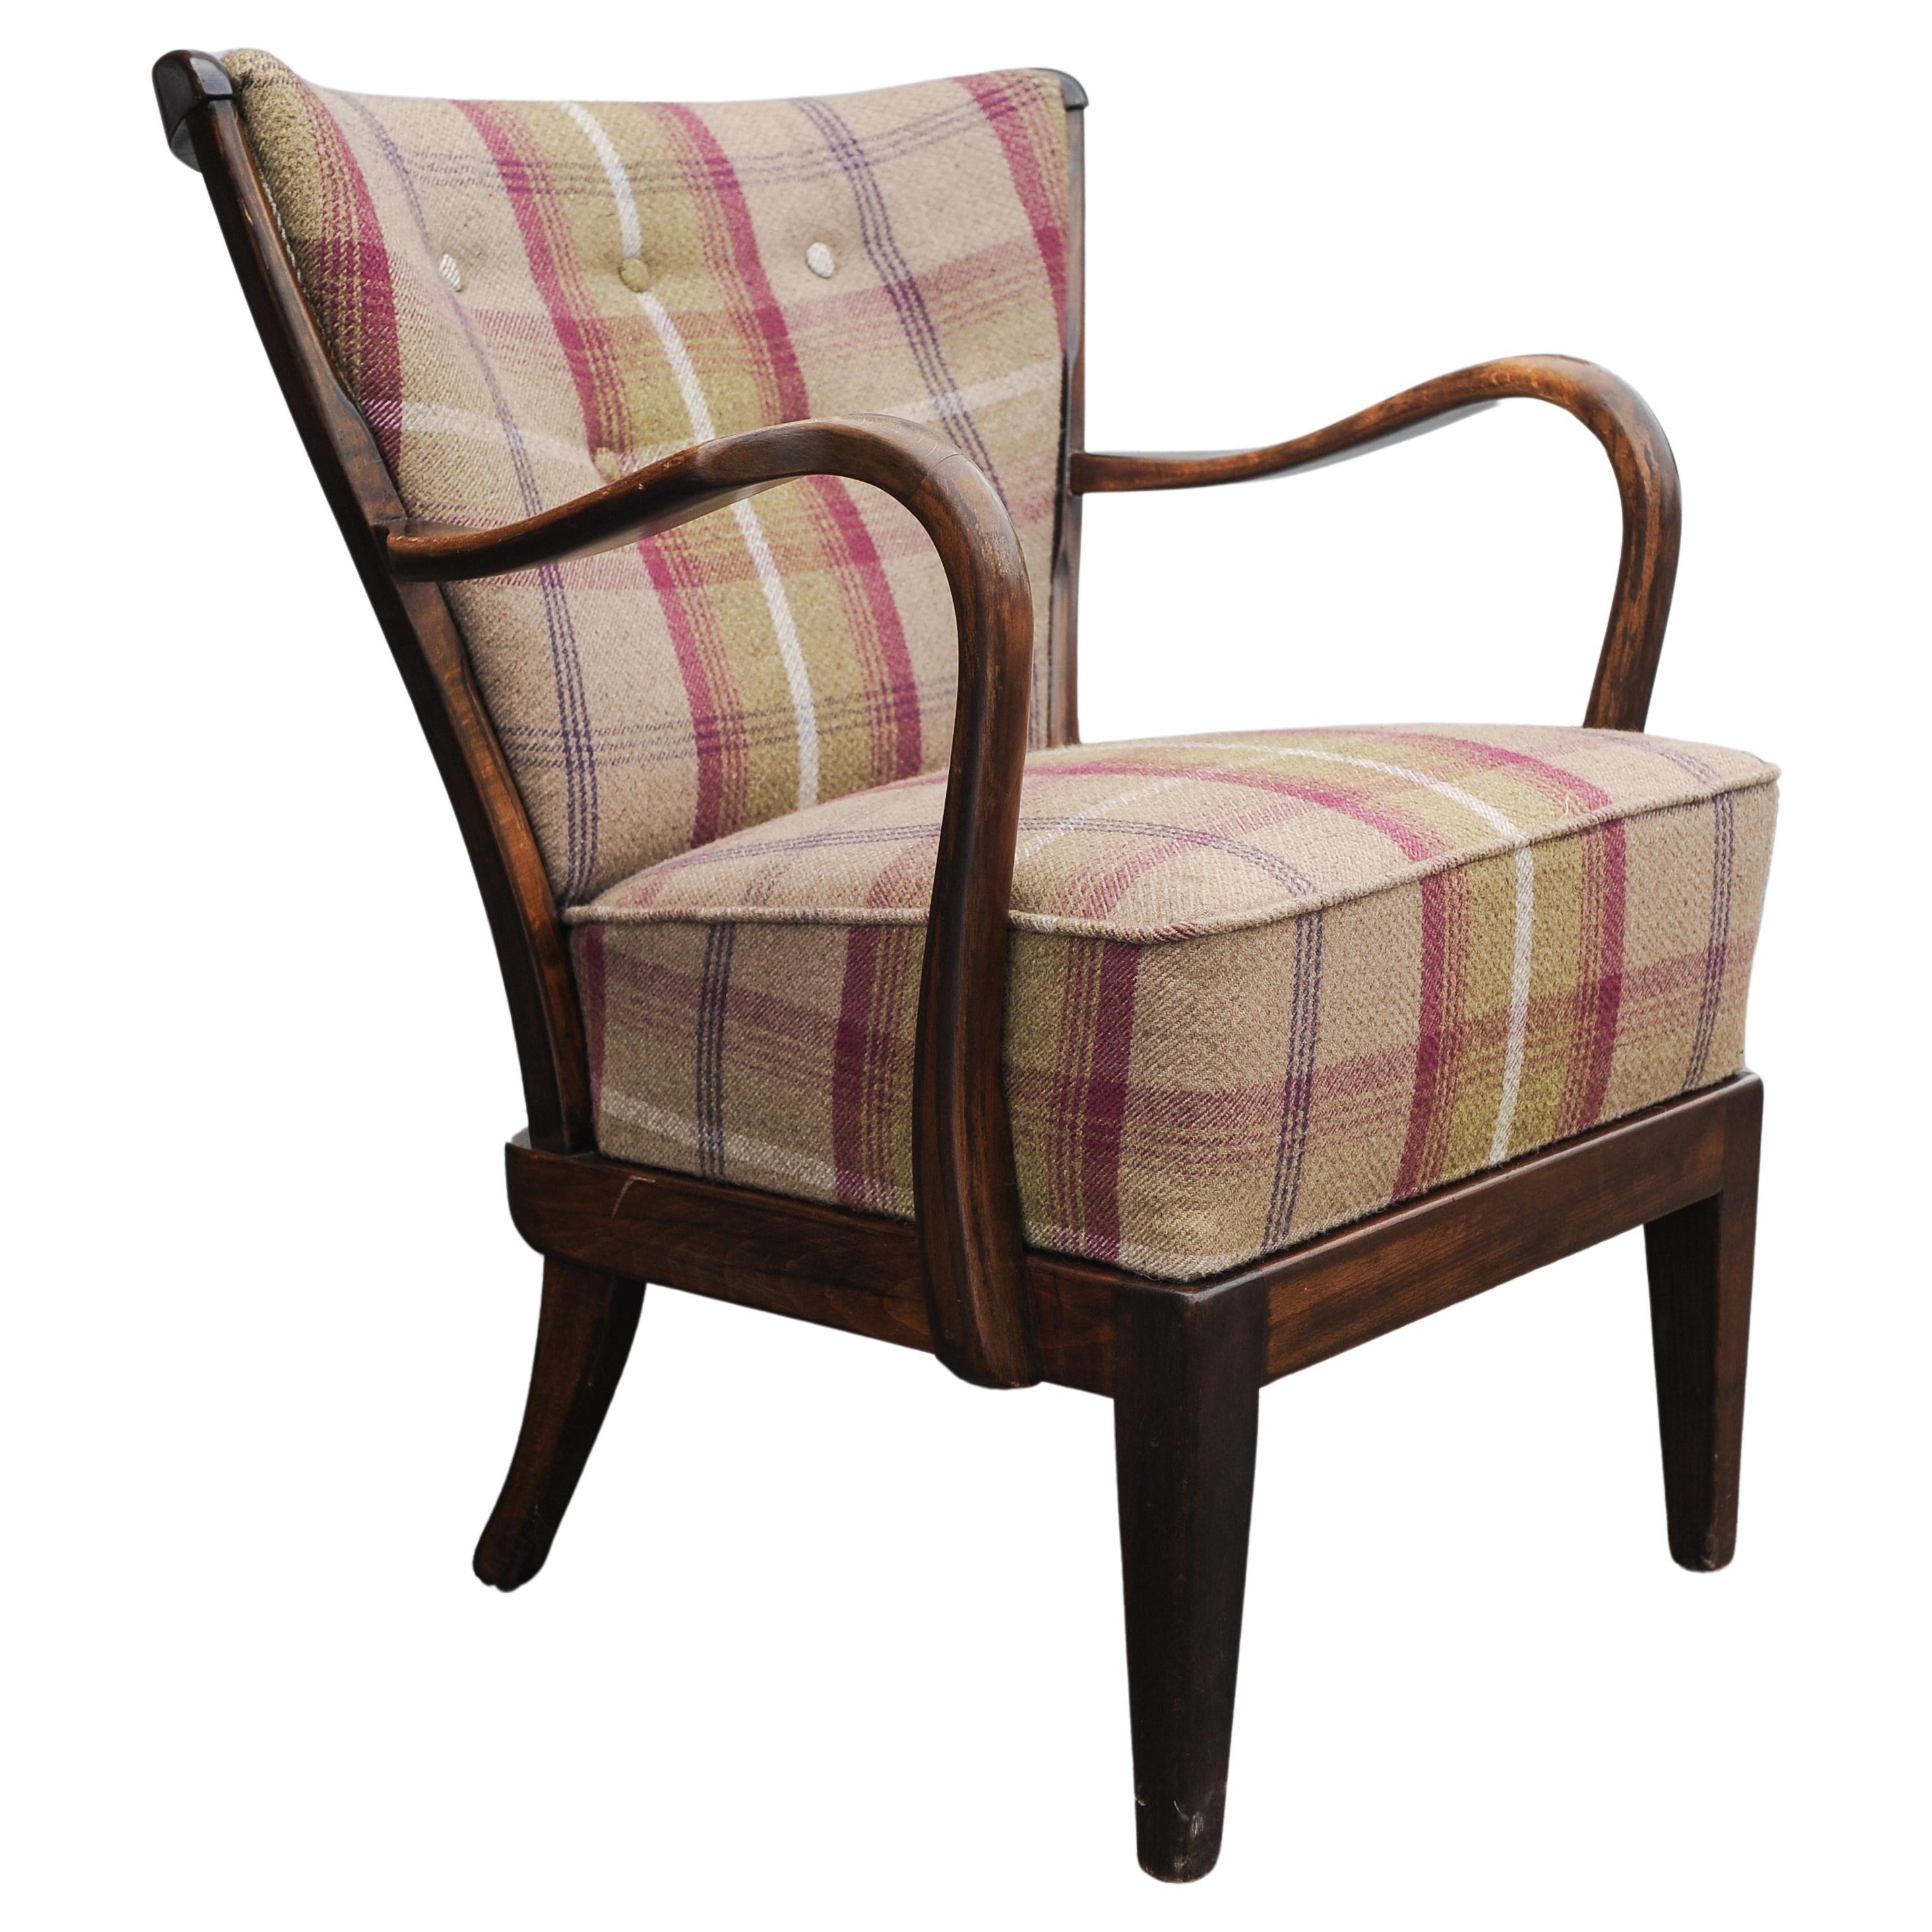 1940er Fritz Hansen Art Deco-Sessel aus gebogenem Eichenholz mit karierter Wollpolsterung 
Hergestellt in Dänemark, Keine Herstellermarken

Fritz Hansen, auch bekannt als Republic of Fritz Hansen, ist eine dänische Möbeldesignfirma. Zu den